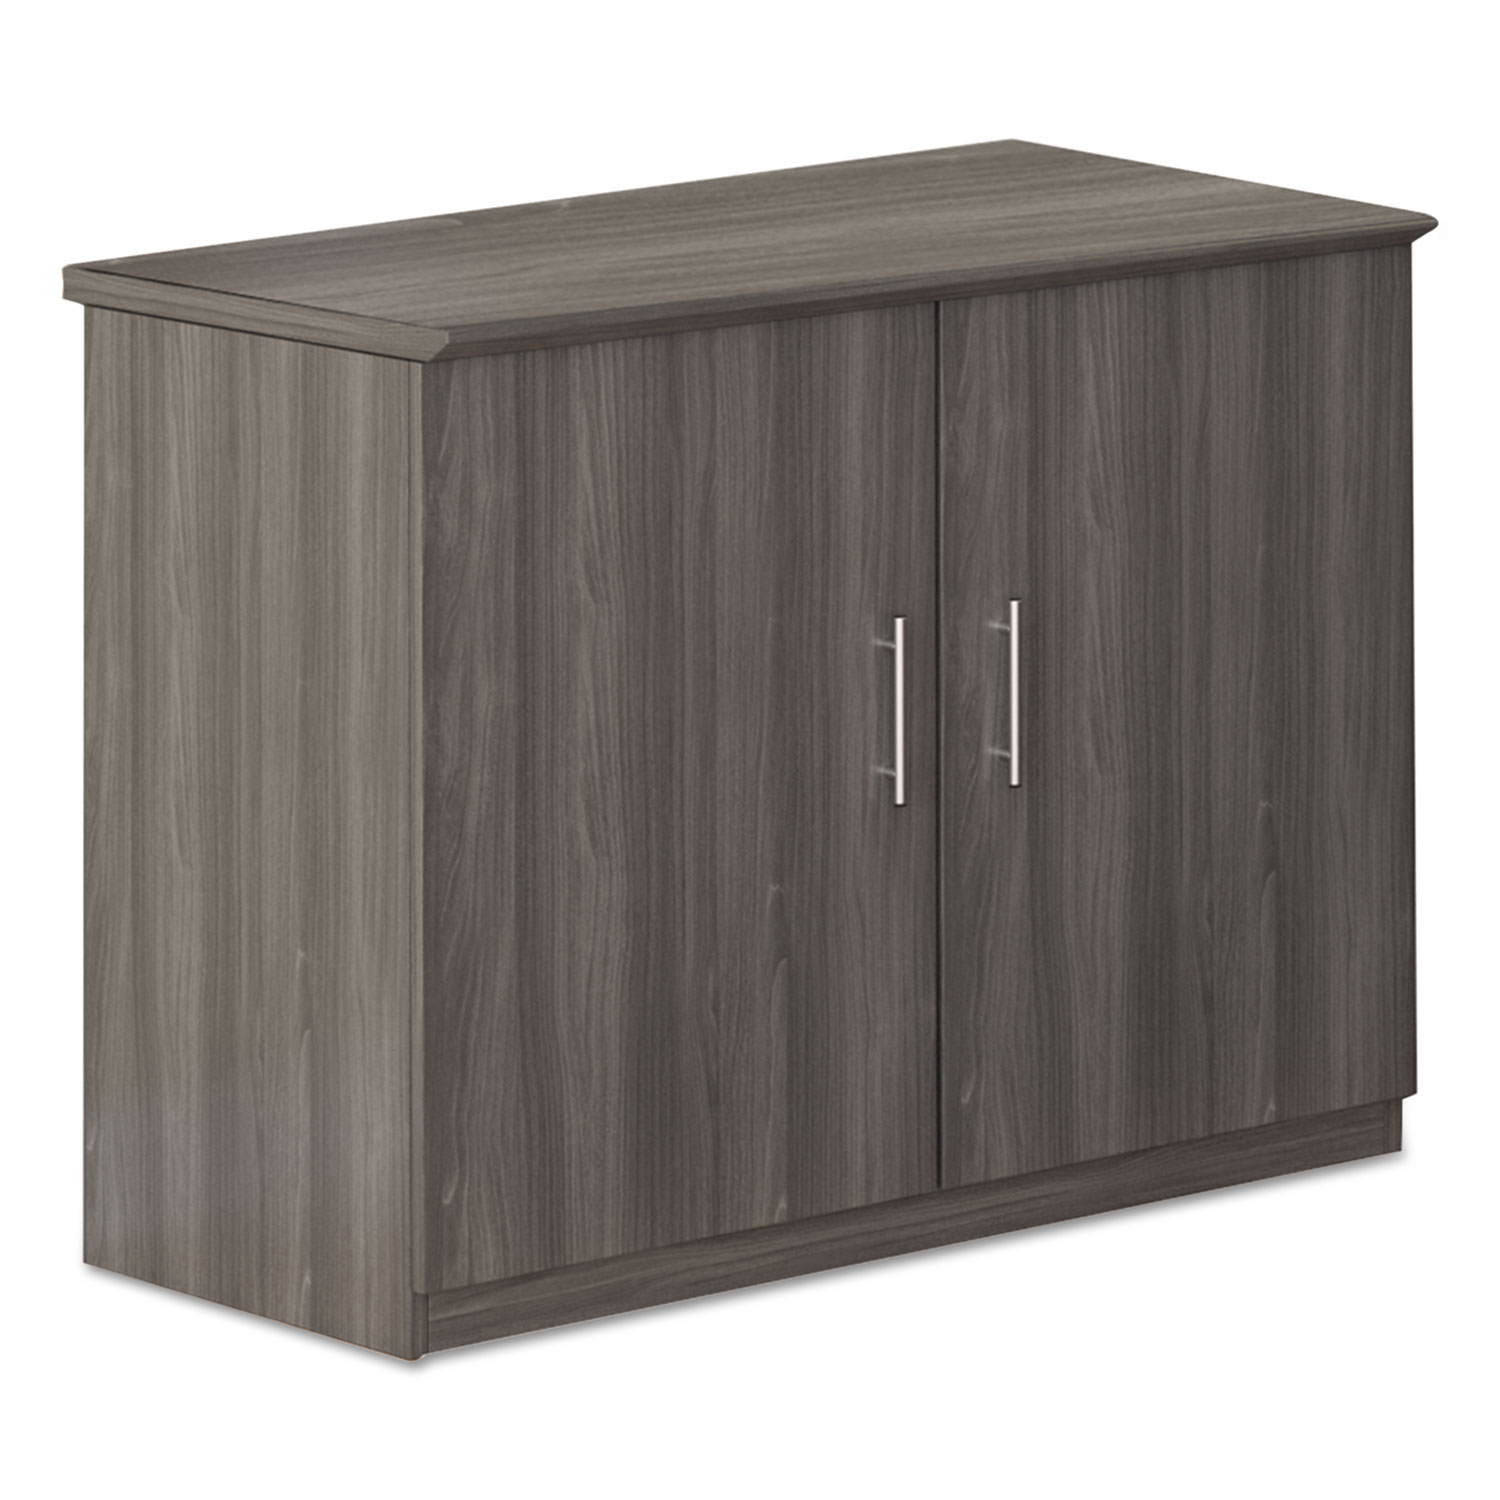 Medina Series Storage Cabinet, 36w x 20d x 29 1/2h, Gray Steel